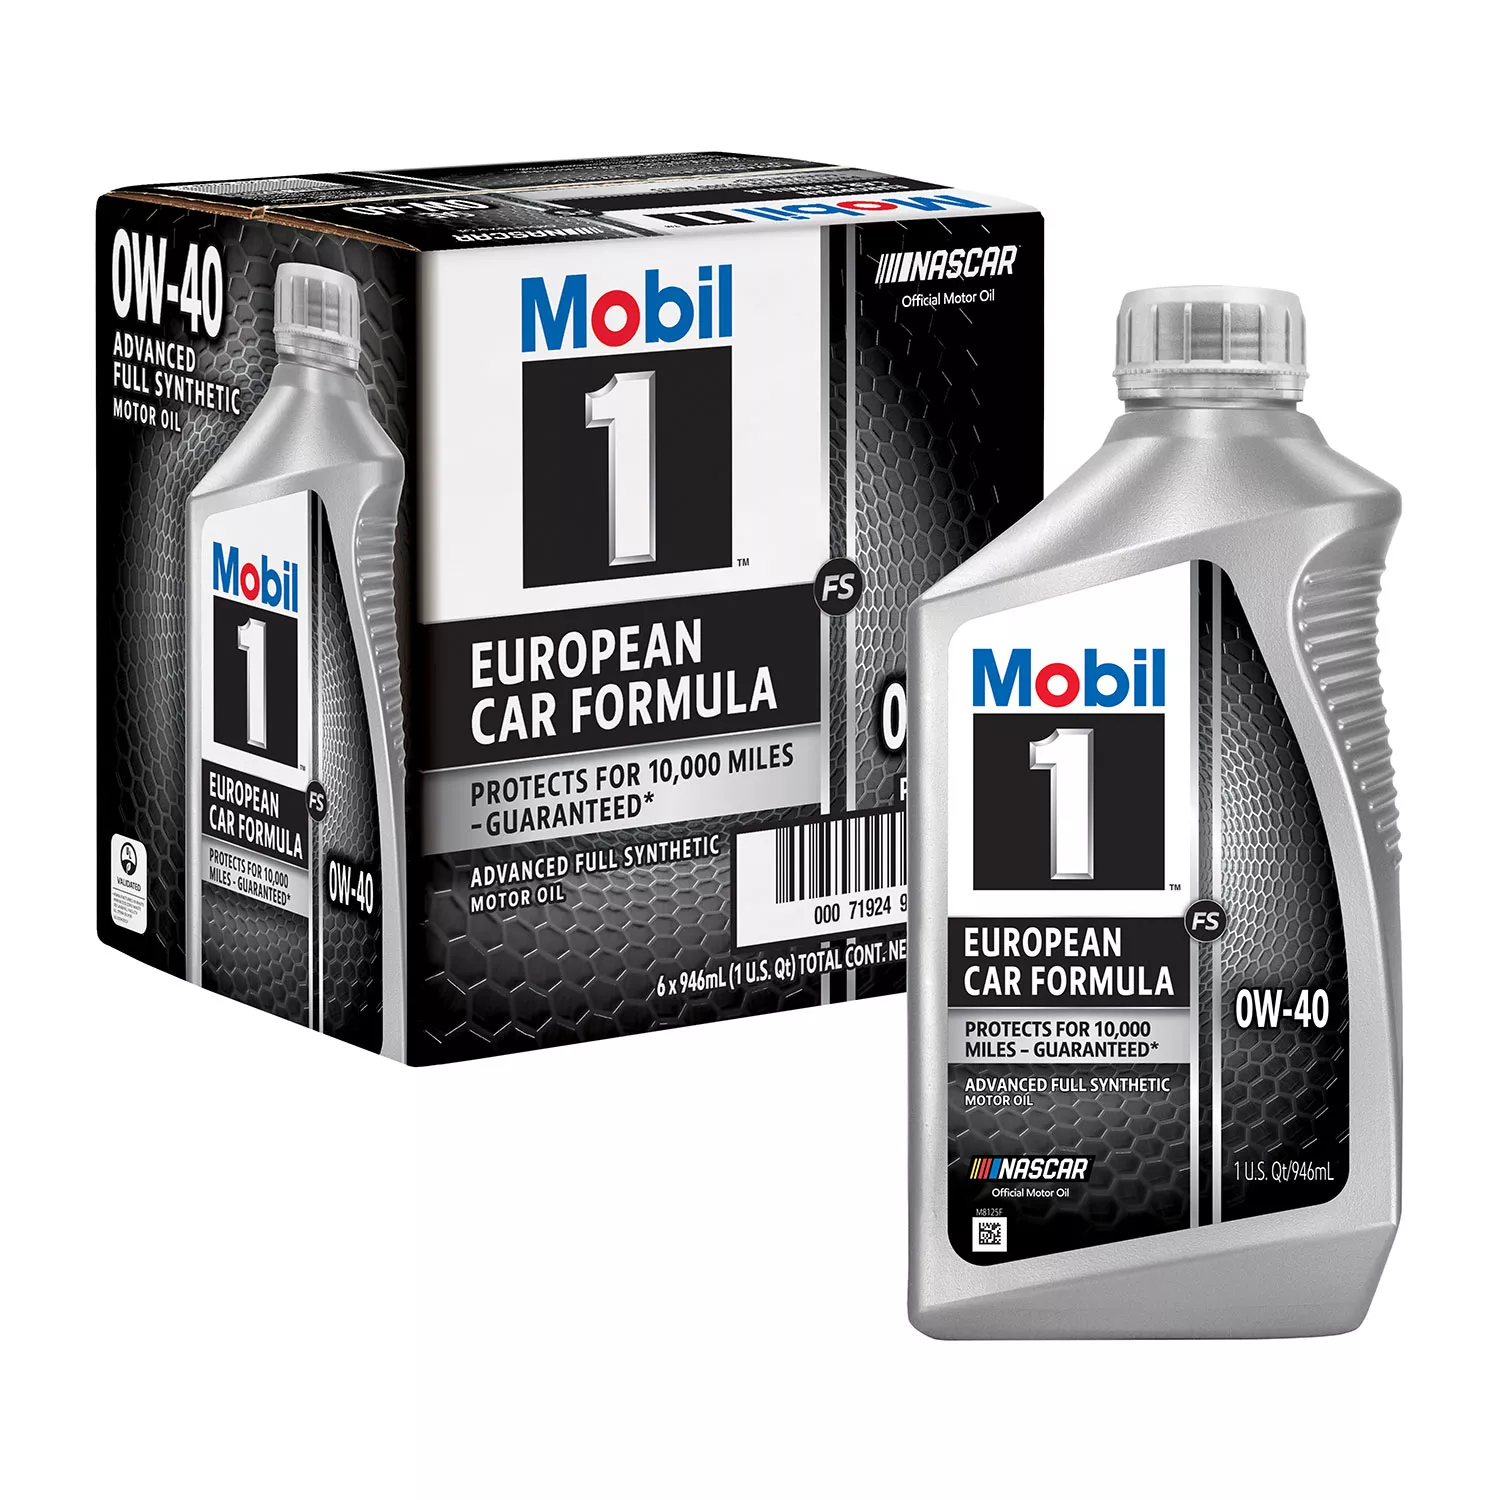 Mobil 1 FS 0W-40 Synthetic Motor Oil (6 pack, 1-quart bottles)